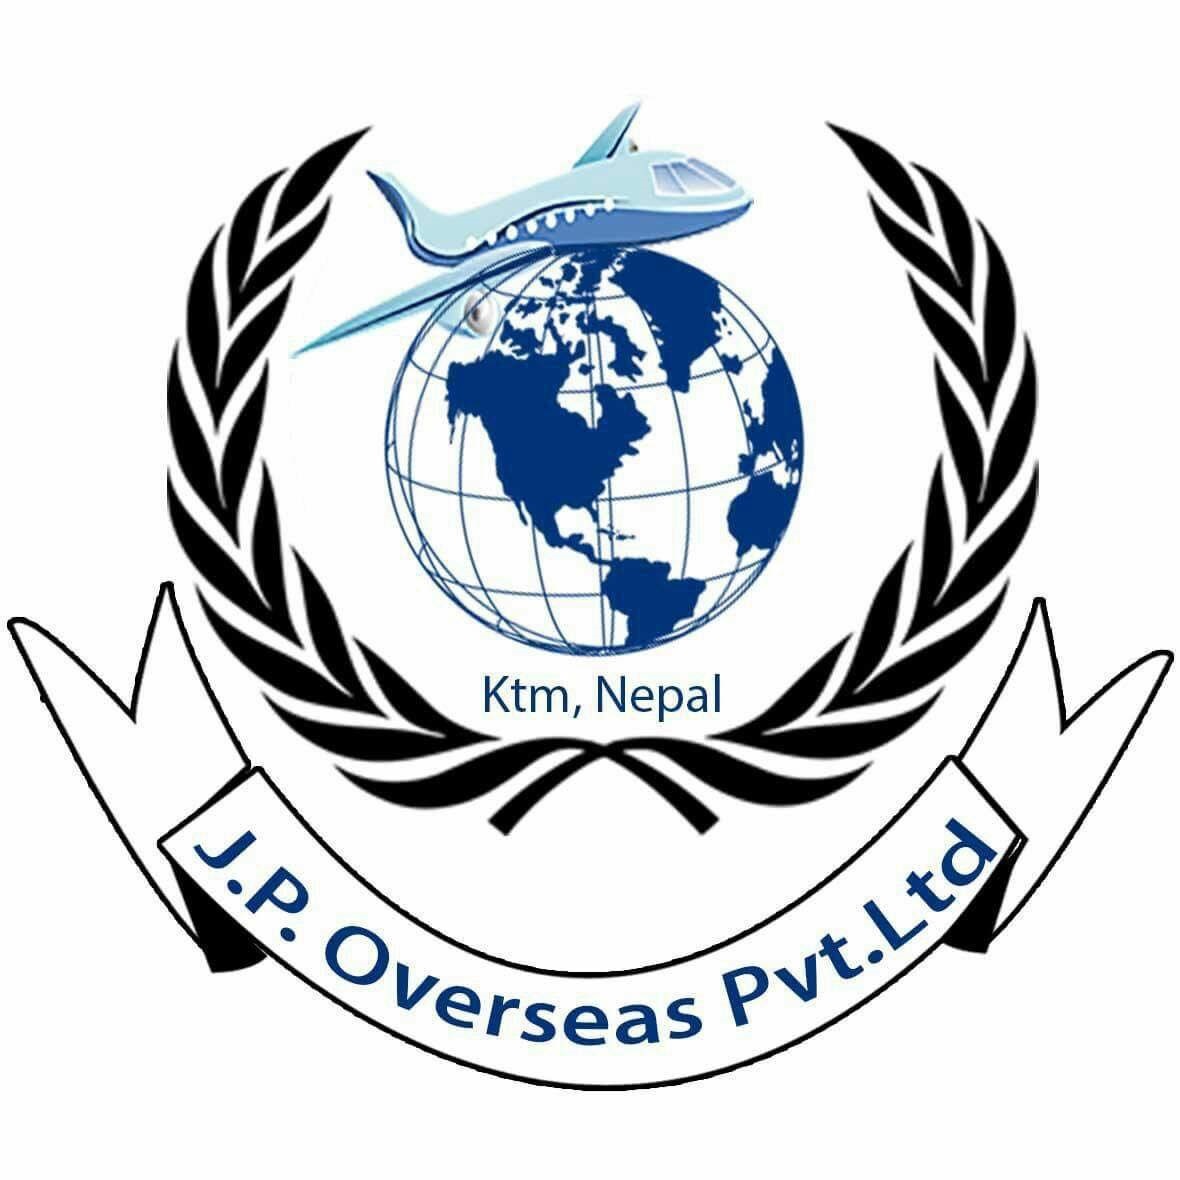 J.P Overseas Nepal